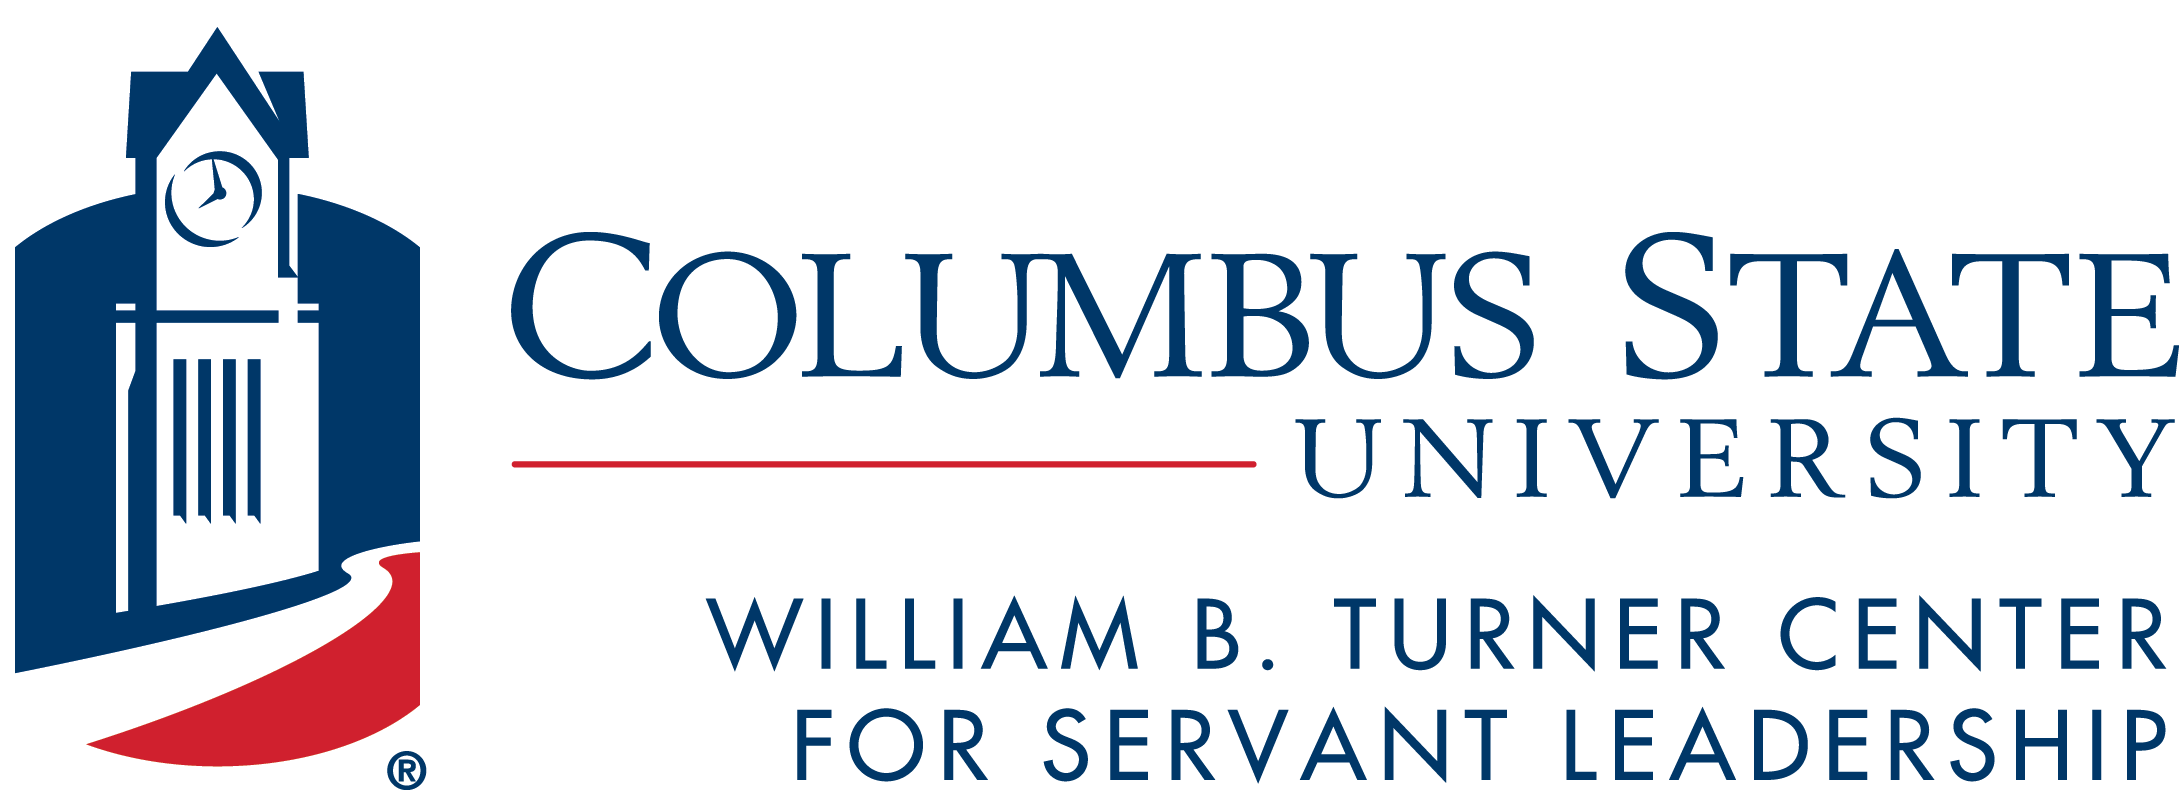 William B Turner Center for Servant Leadership